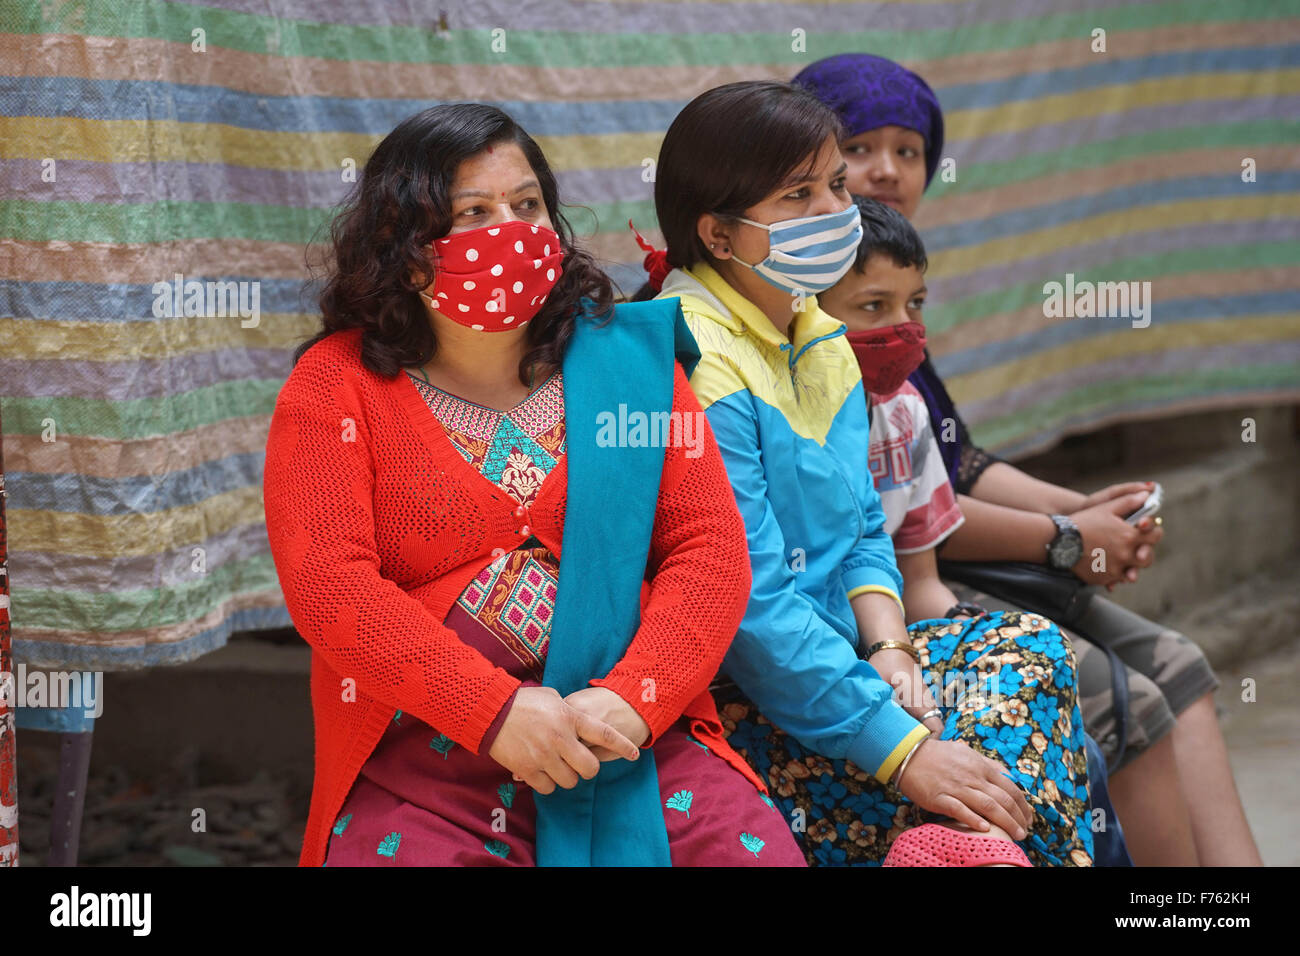 People wearing masks, kathmandu, nepal, asia Stock Photo